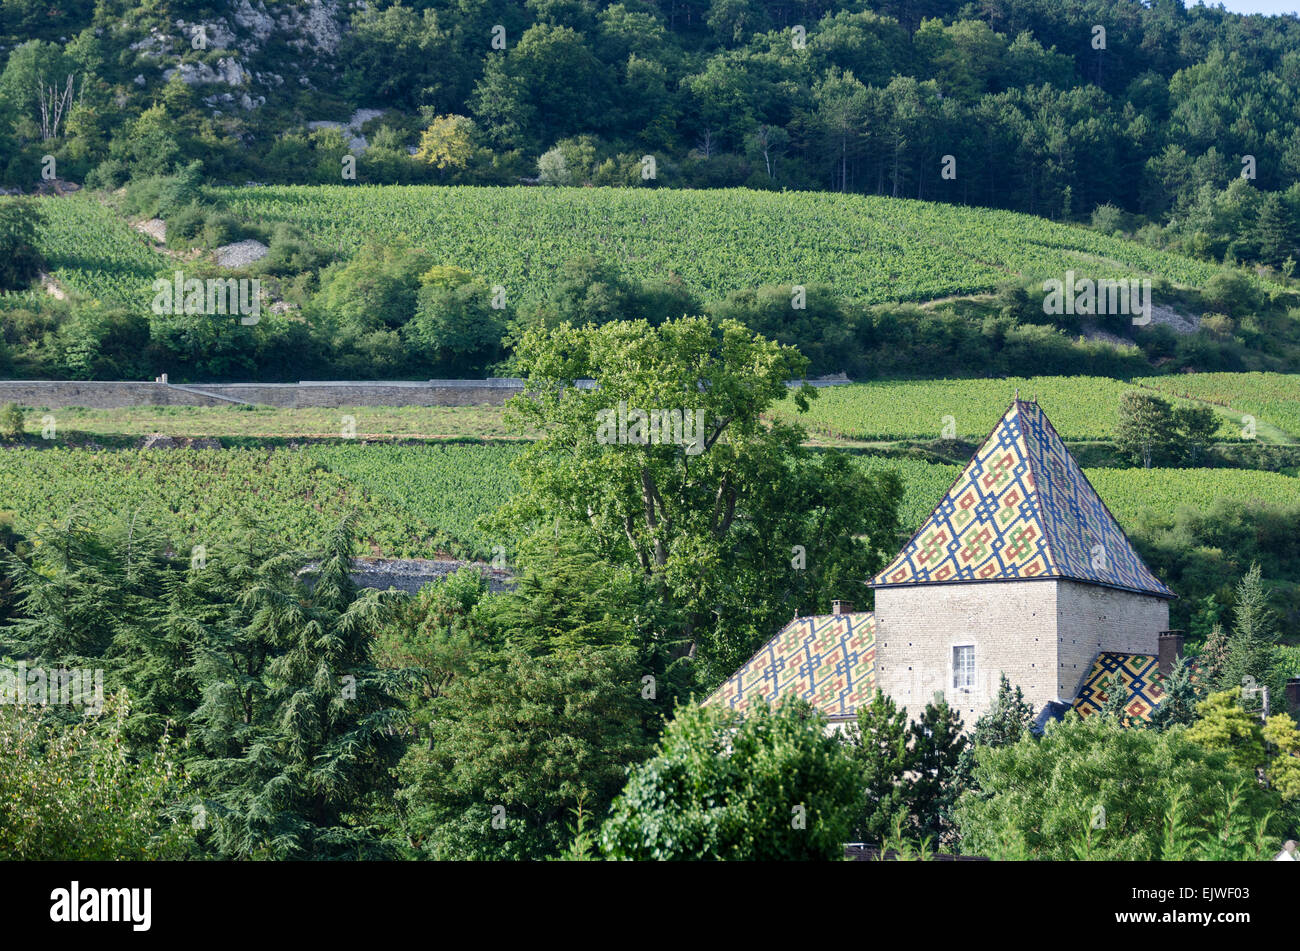 Vineyards surround the Château de Santenay, famous for its glazed tile roof, Santenay, Côte-dOr, France Stock Photo